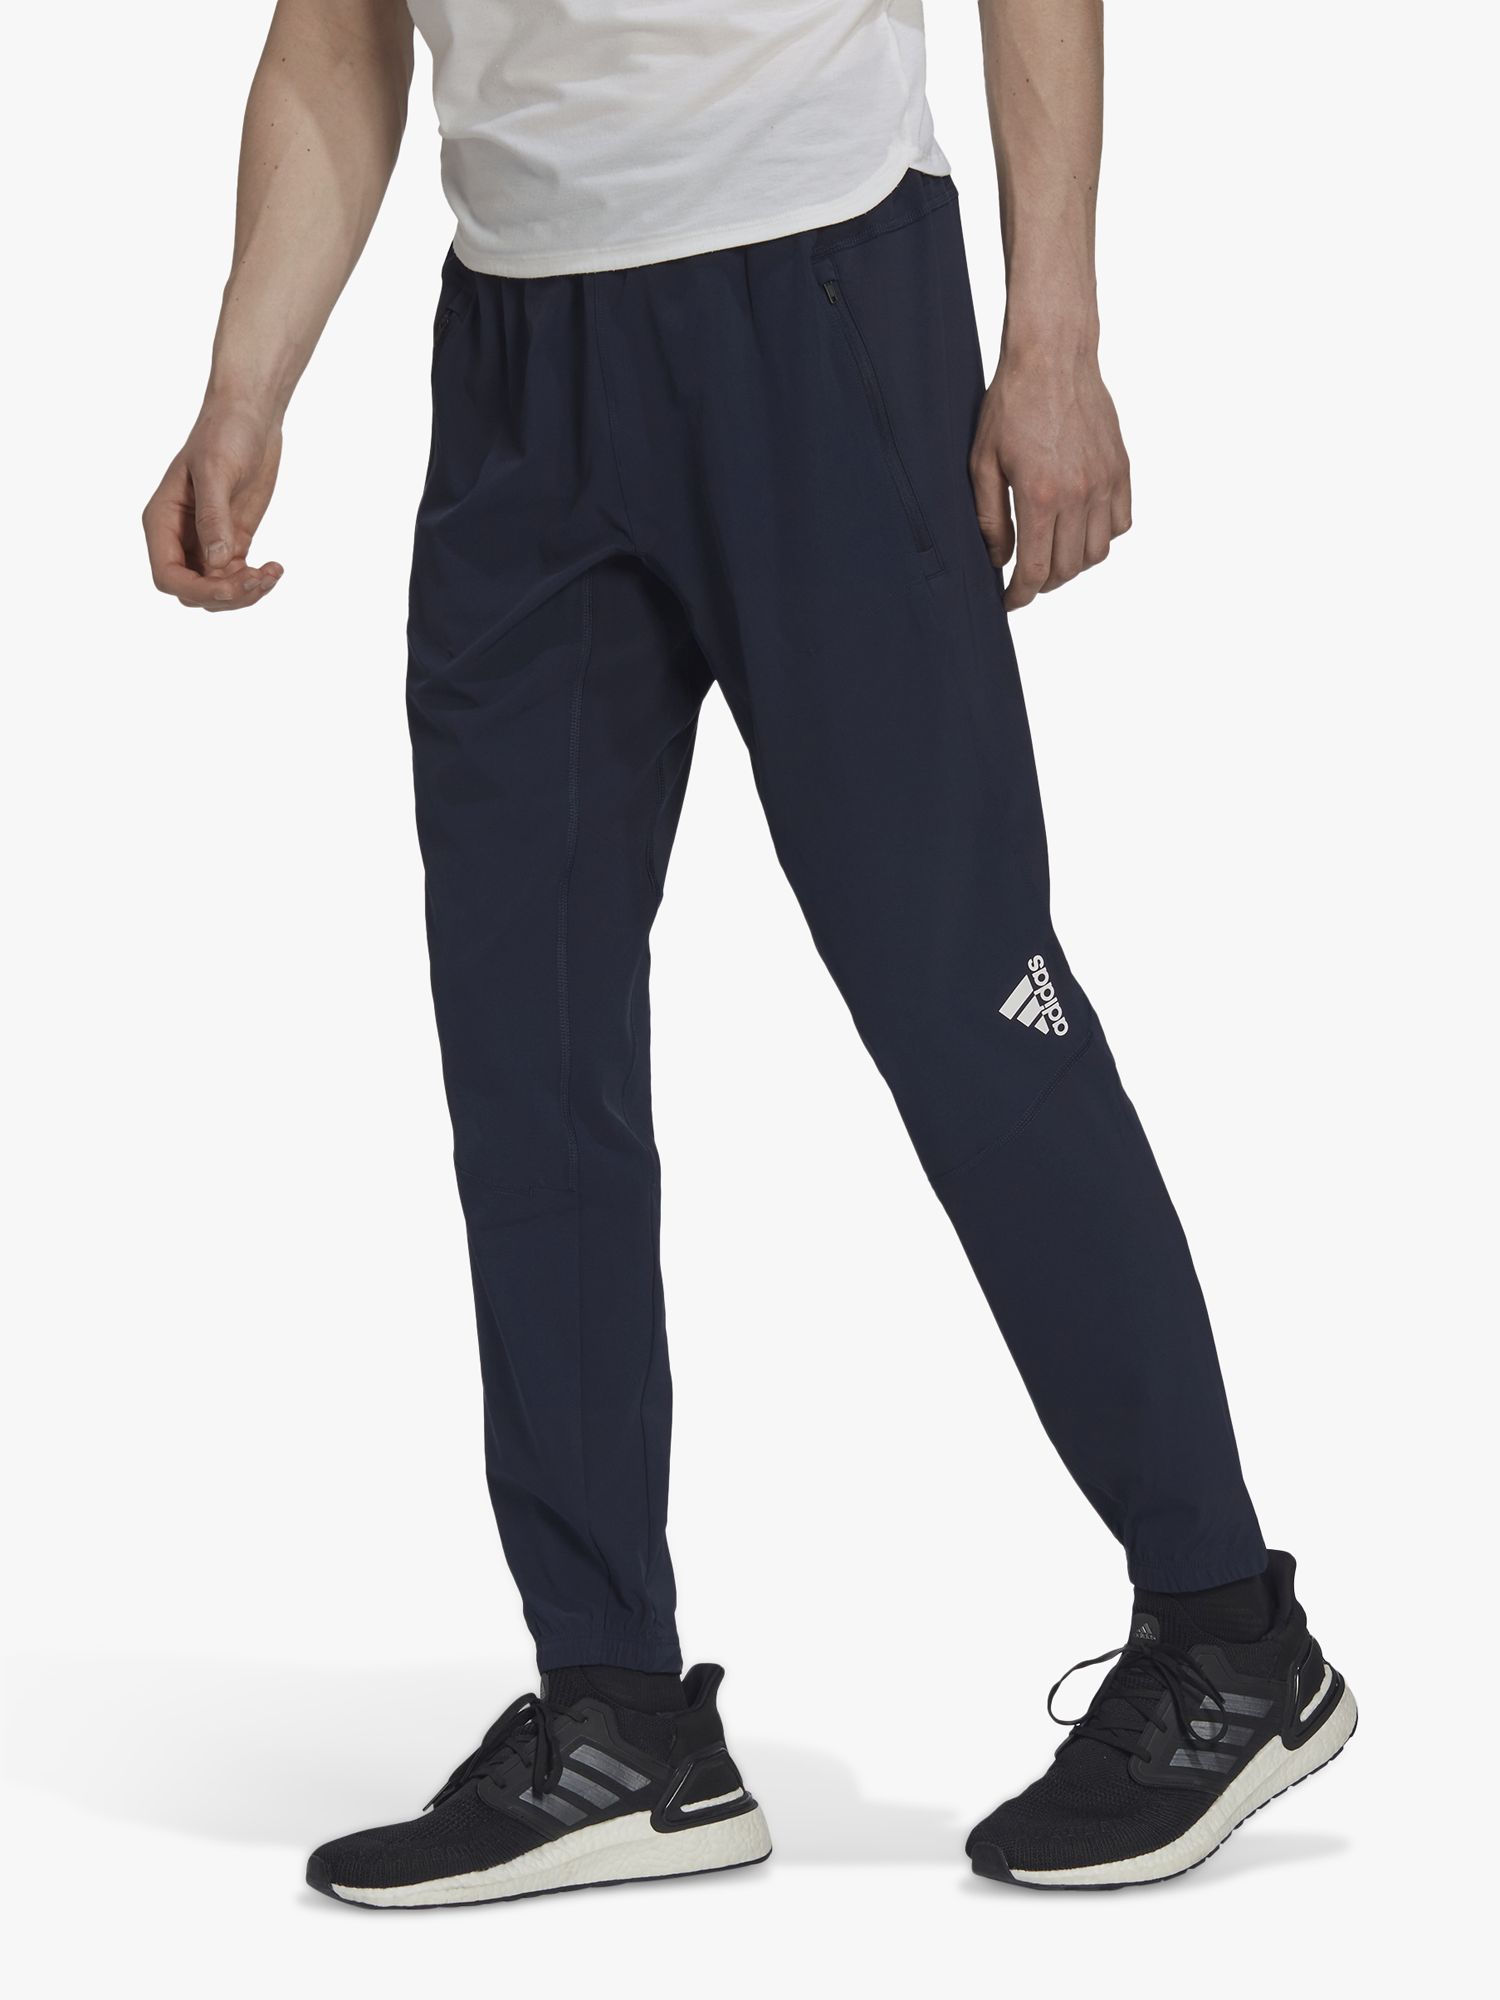 Adidas Mens Pants in Mens Clothing